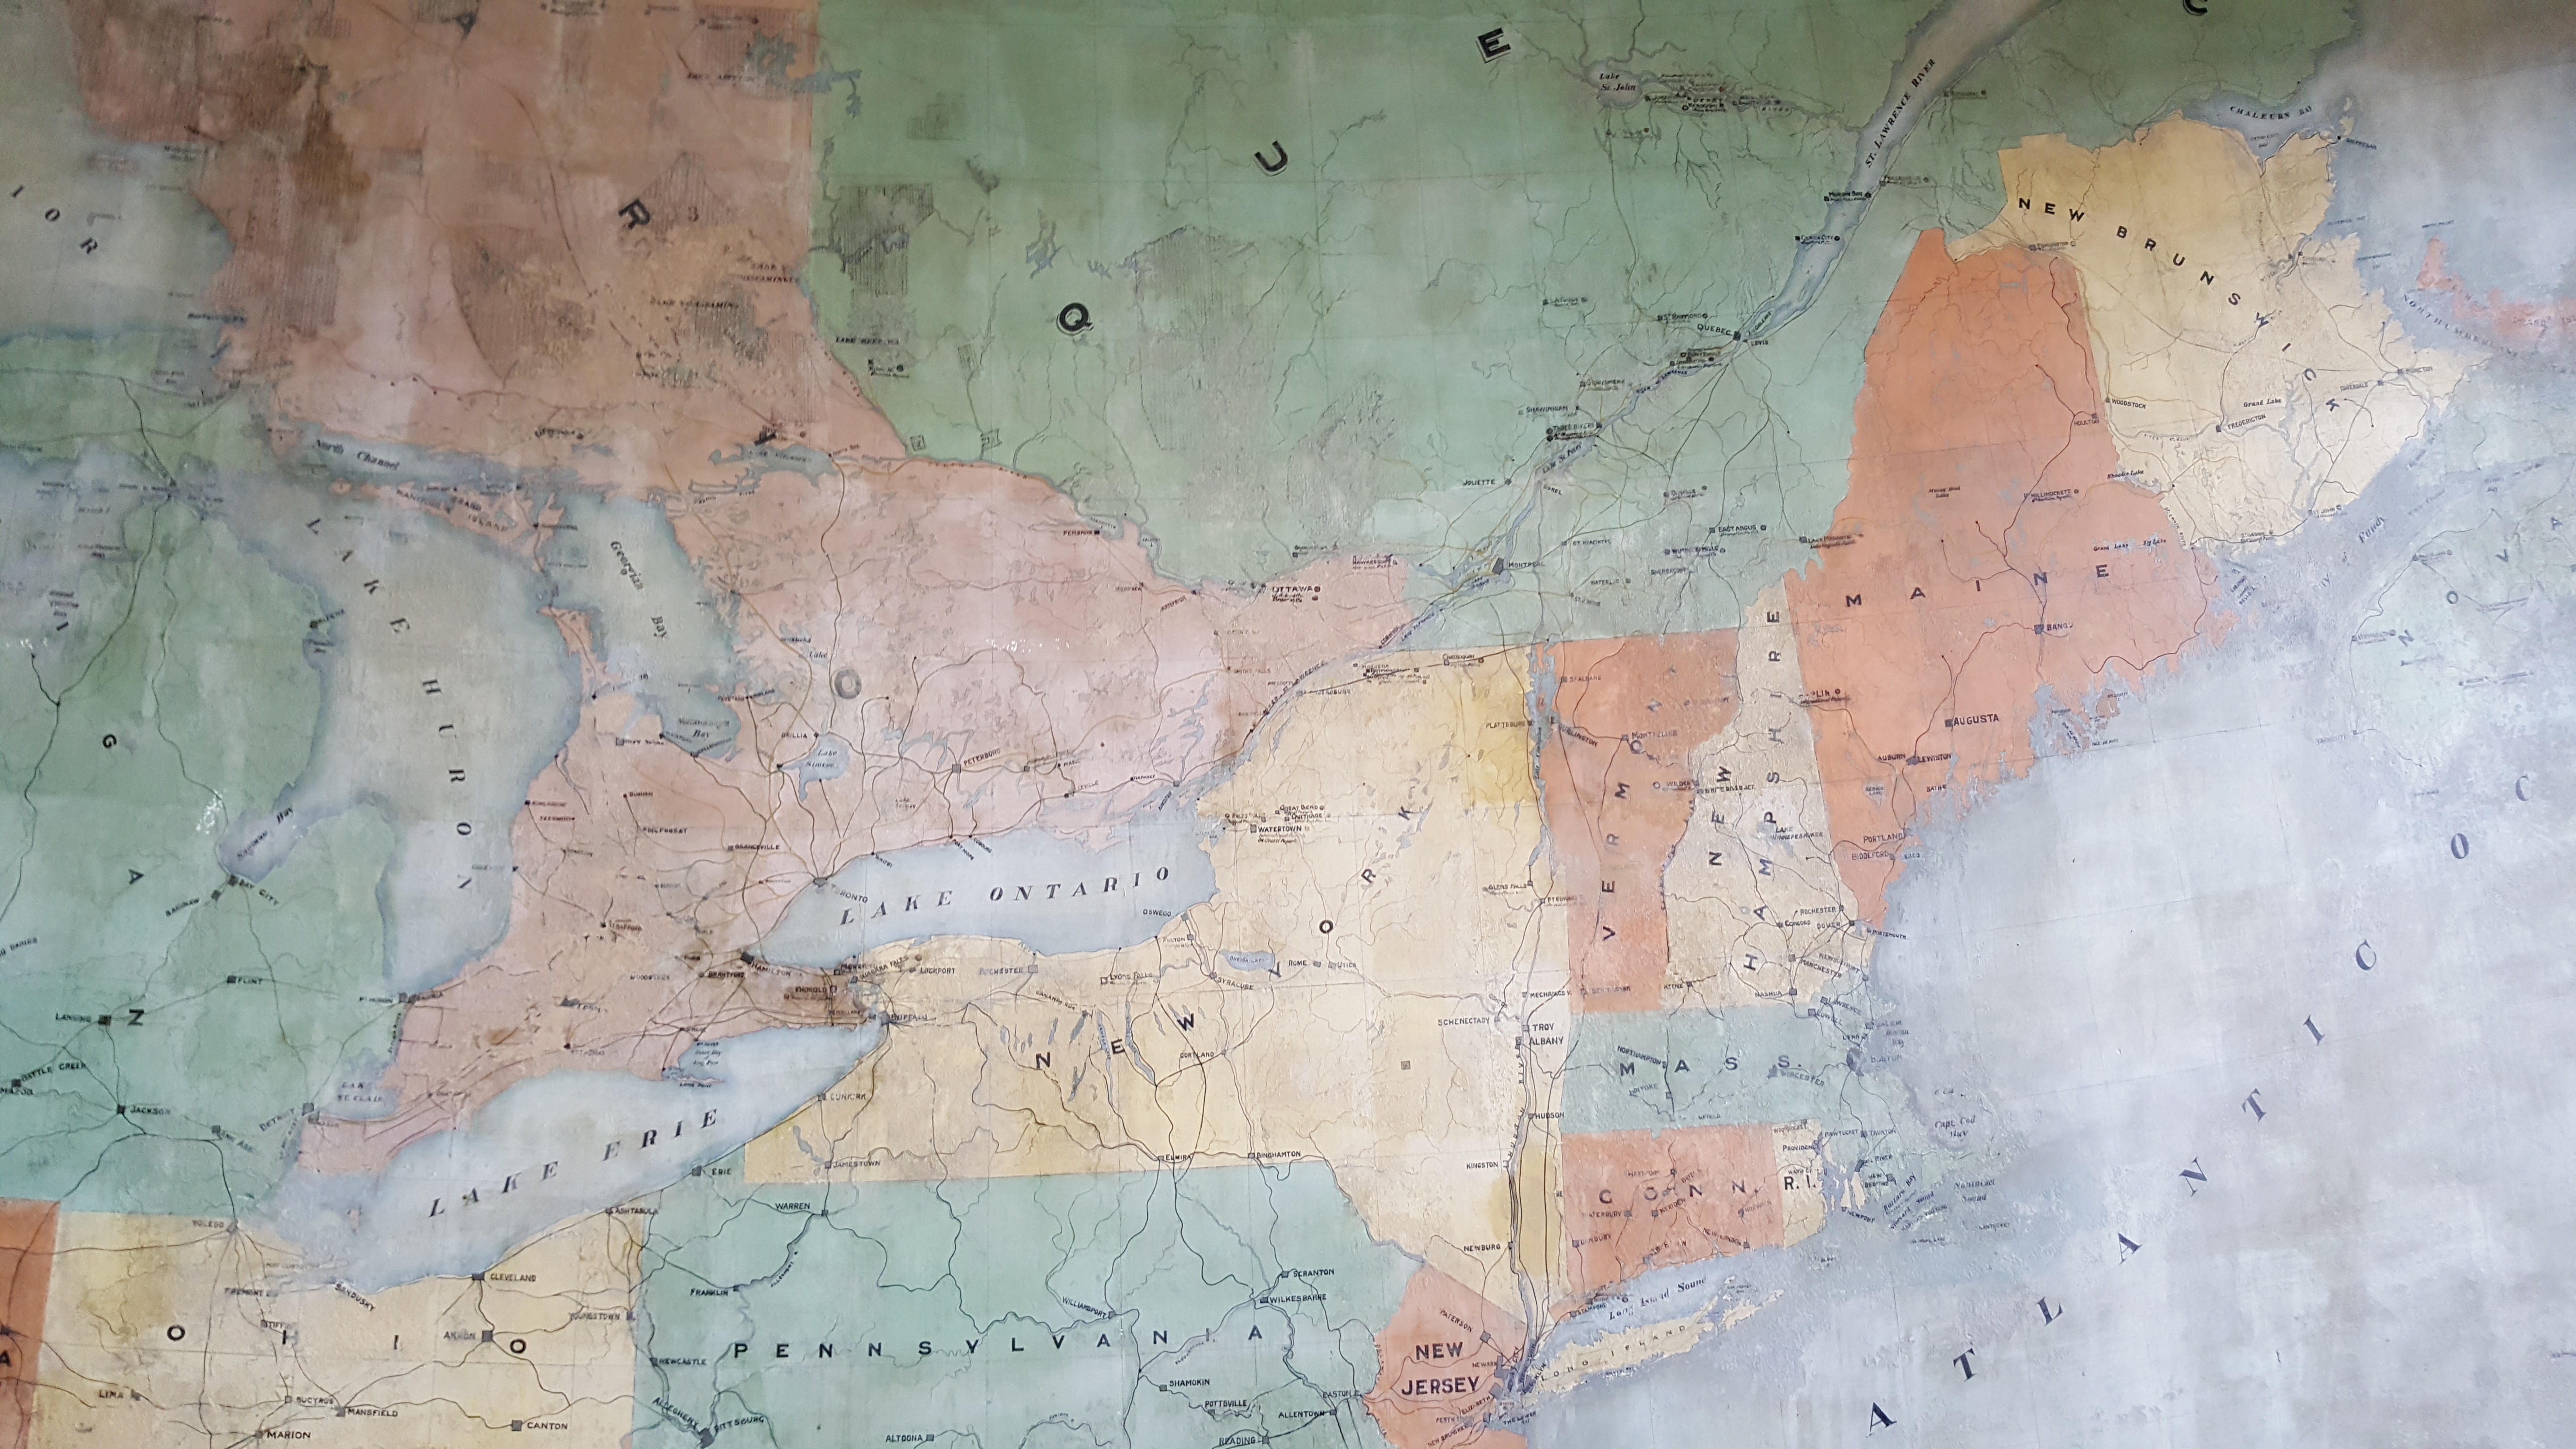 Carte géographique peinte en 1901 illustrant les Grands Lacs, l'Ontario, le Québec, l'océan Atlantique et le Nord-Est américain.